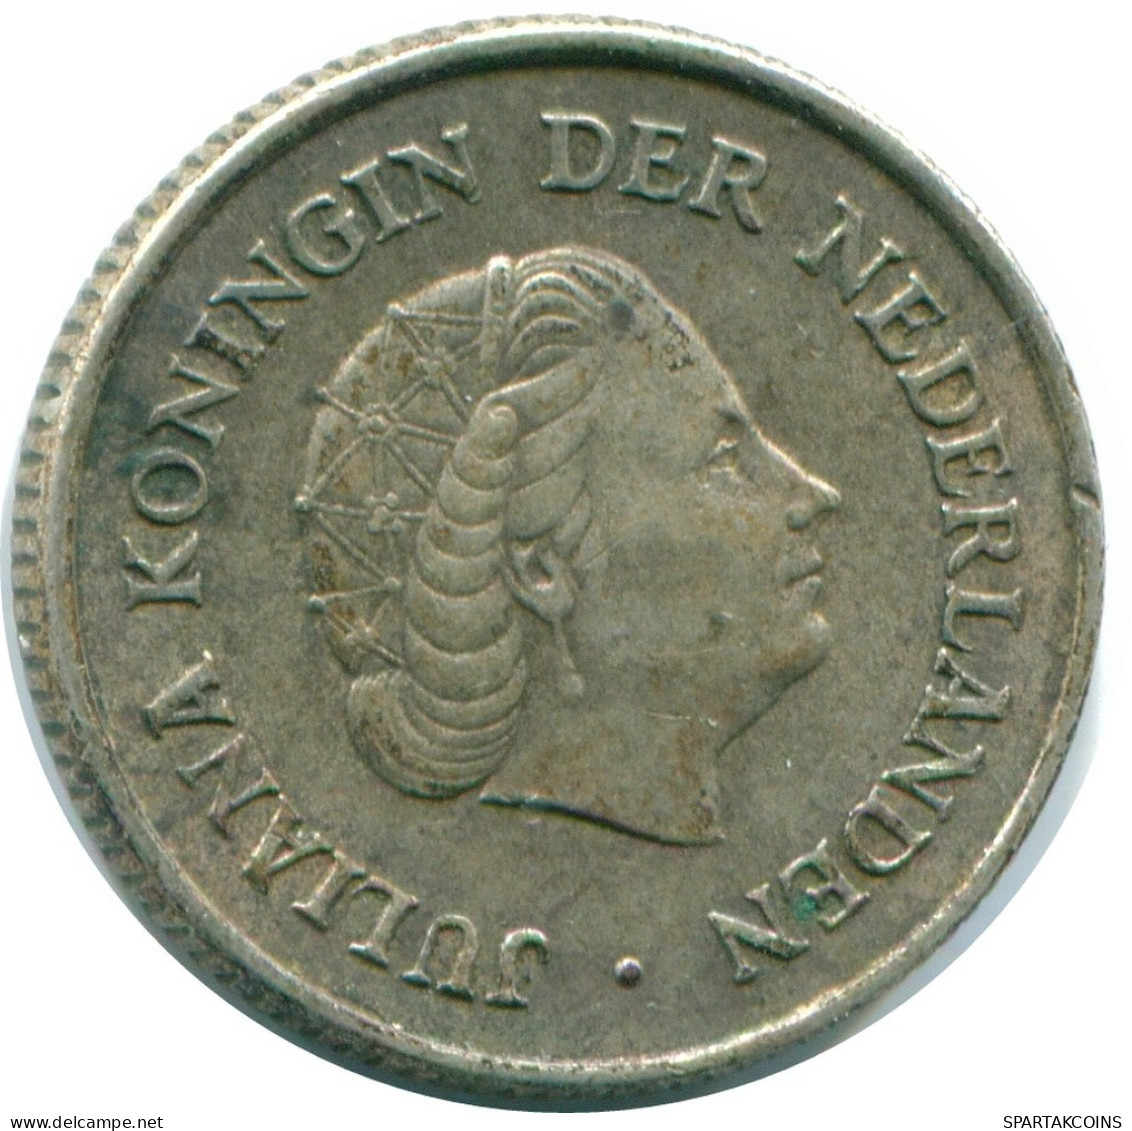 1/4 GULDEN 1965 NIEDERLÄNDISCHE ANTILLEN SILBER Koloniale Münze #NL11410.4.D.A - Antilles Néerlandaises